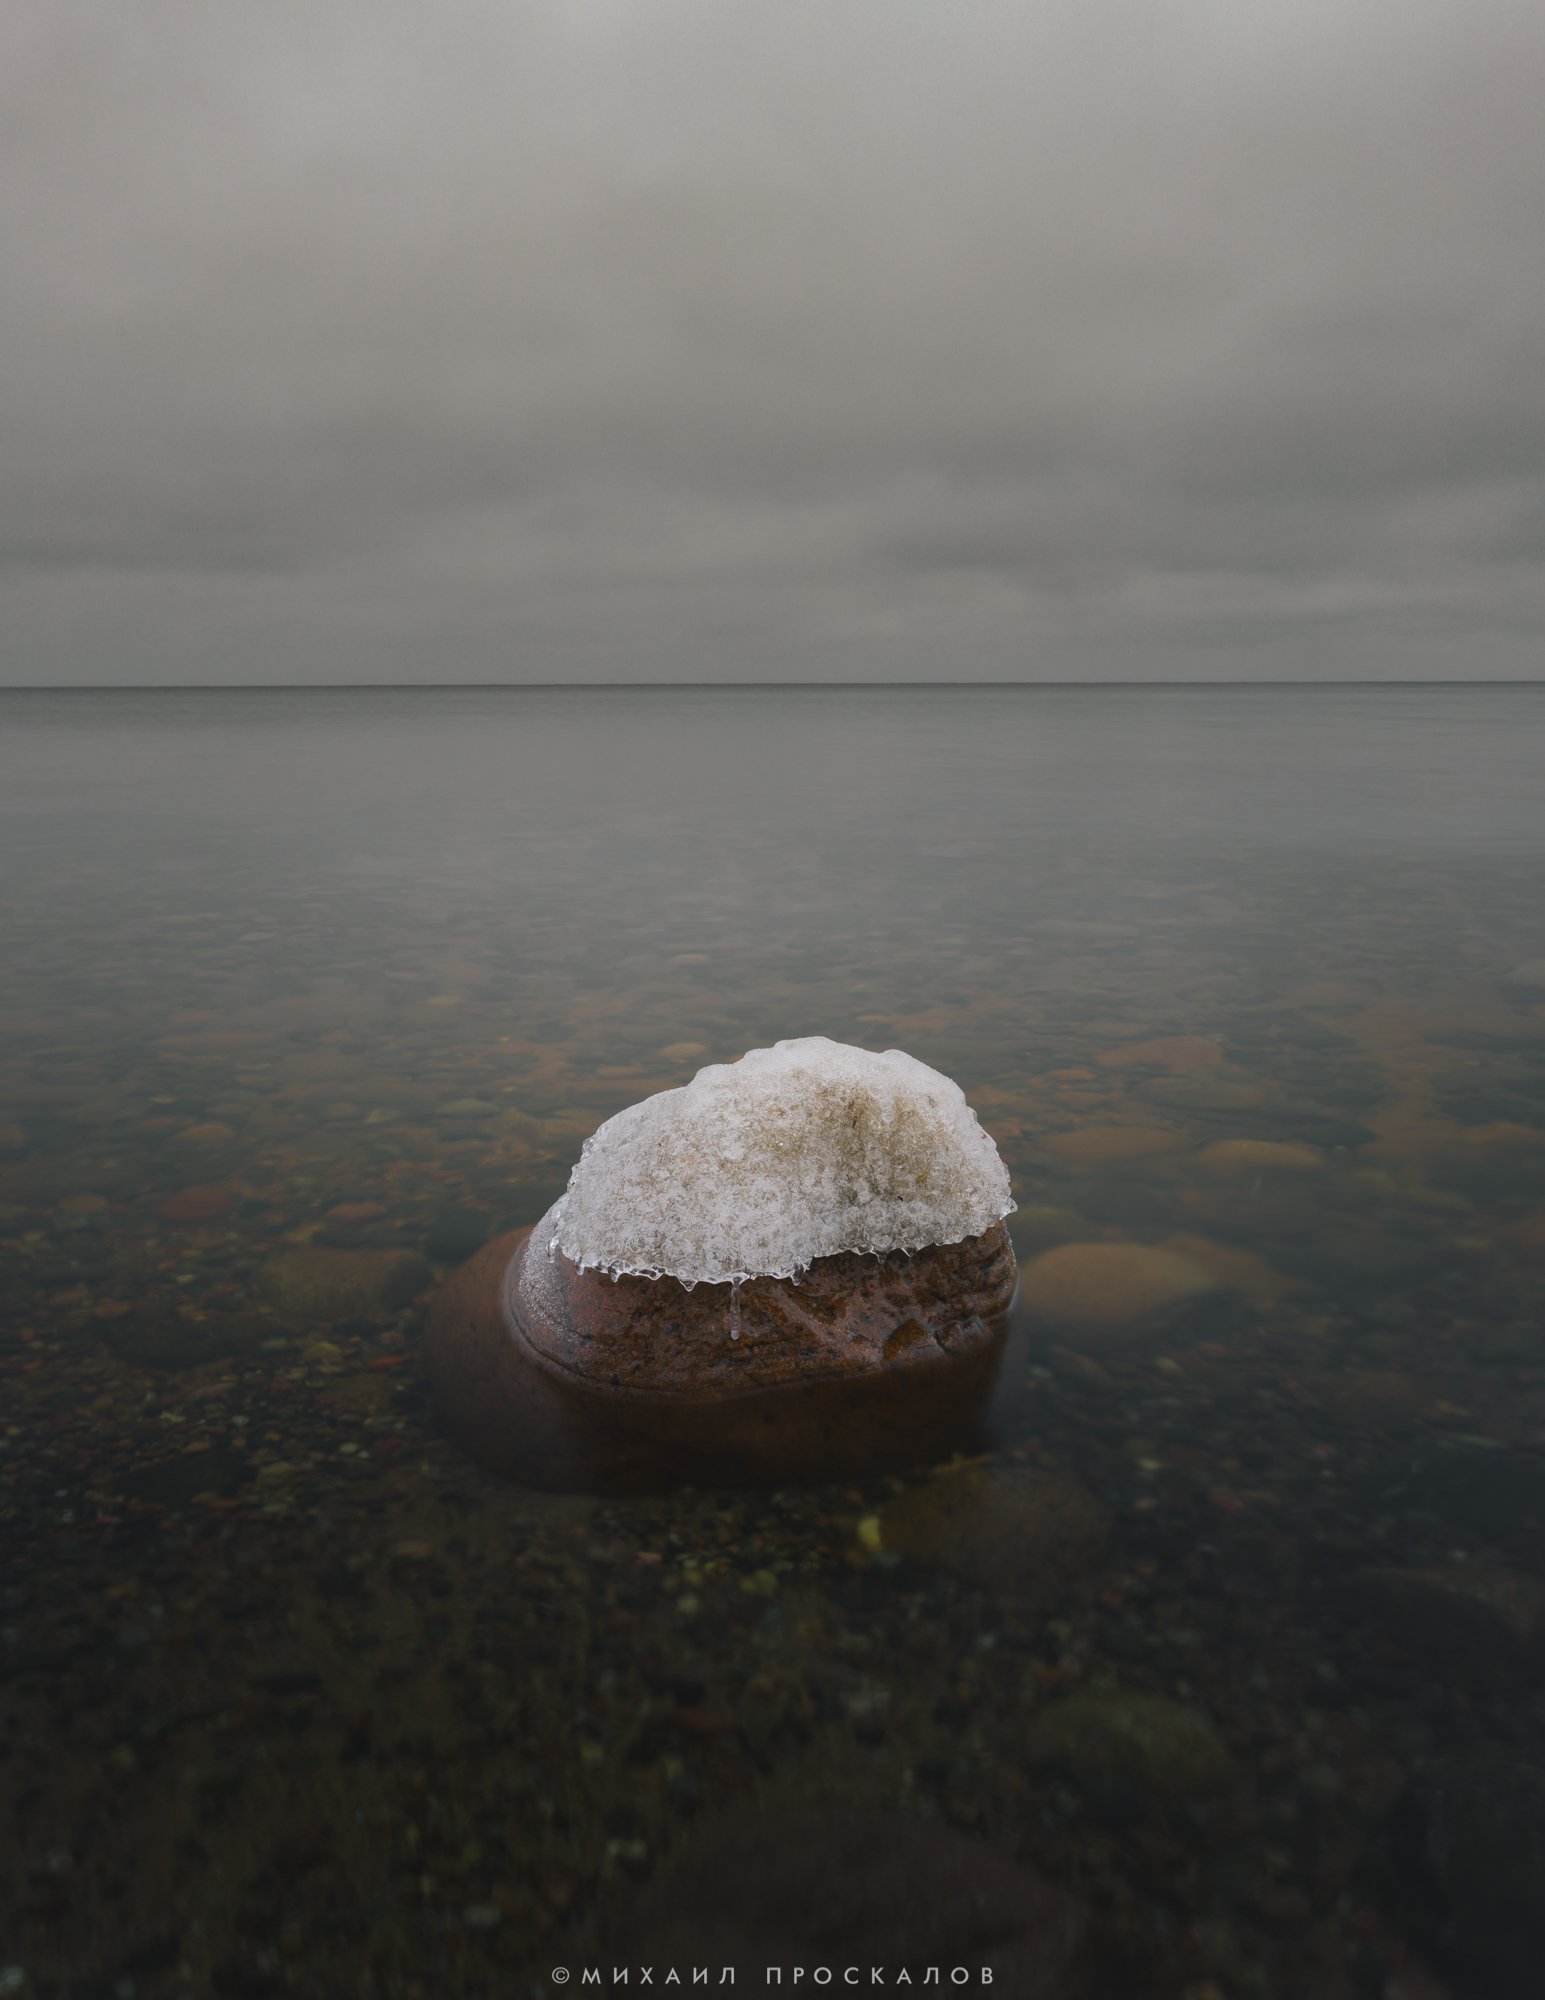 Природа, панорама, камень, снег, серое, Михаил Проскалов